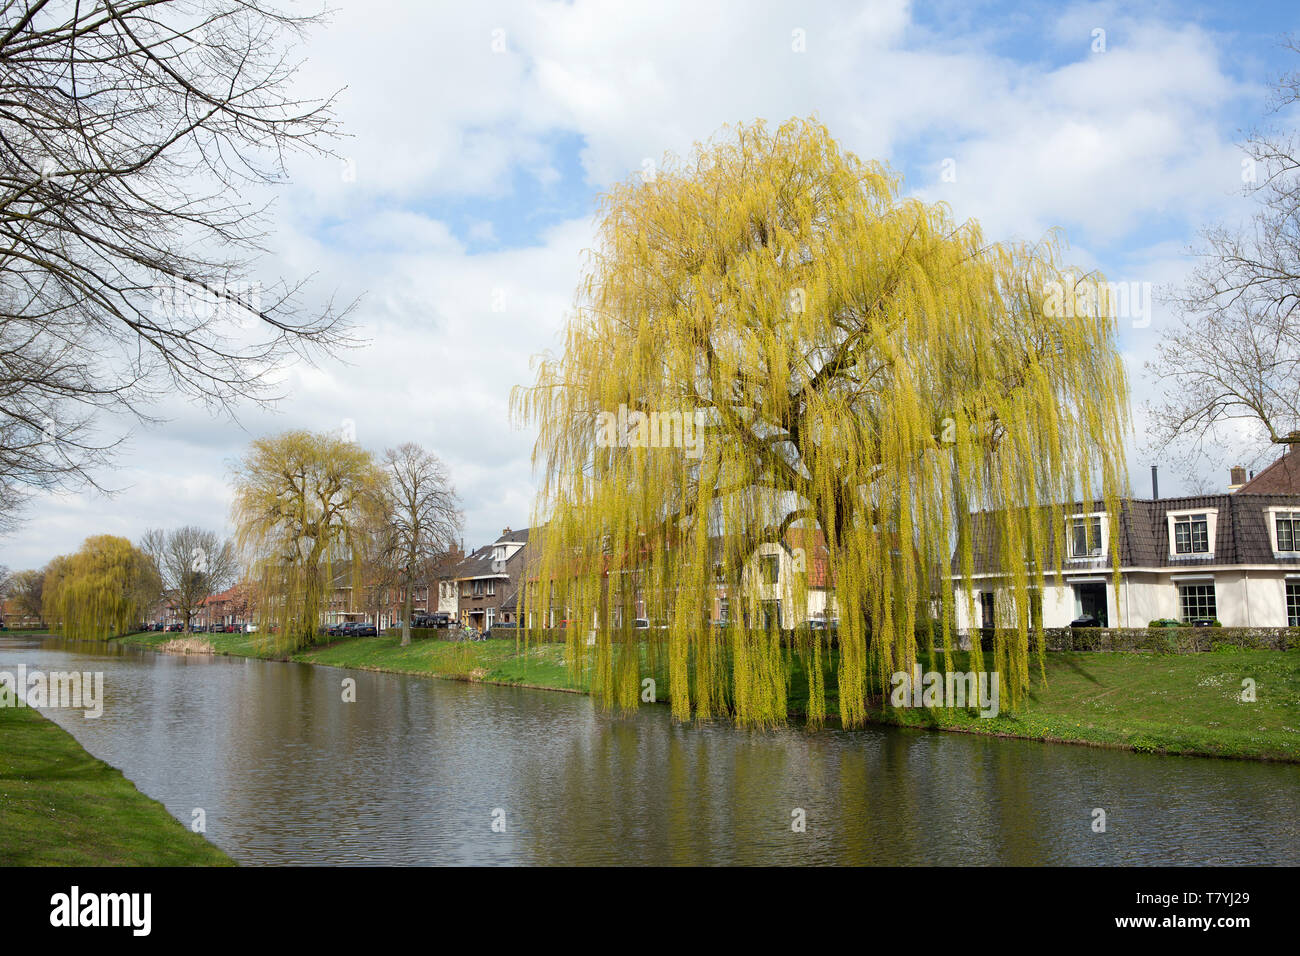 MOLENWEG, CULEMBORG, Pays-Bas - le 27 mars 2019 : Babylone ou willow - saule pleureur Salix babylonica - au début du printemps le long d'un canal. Banque D'Images